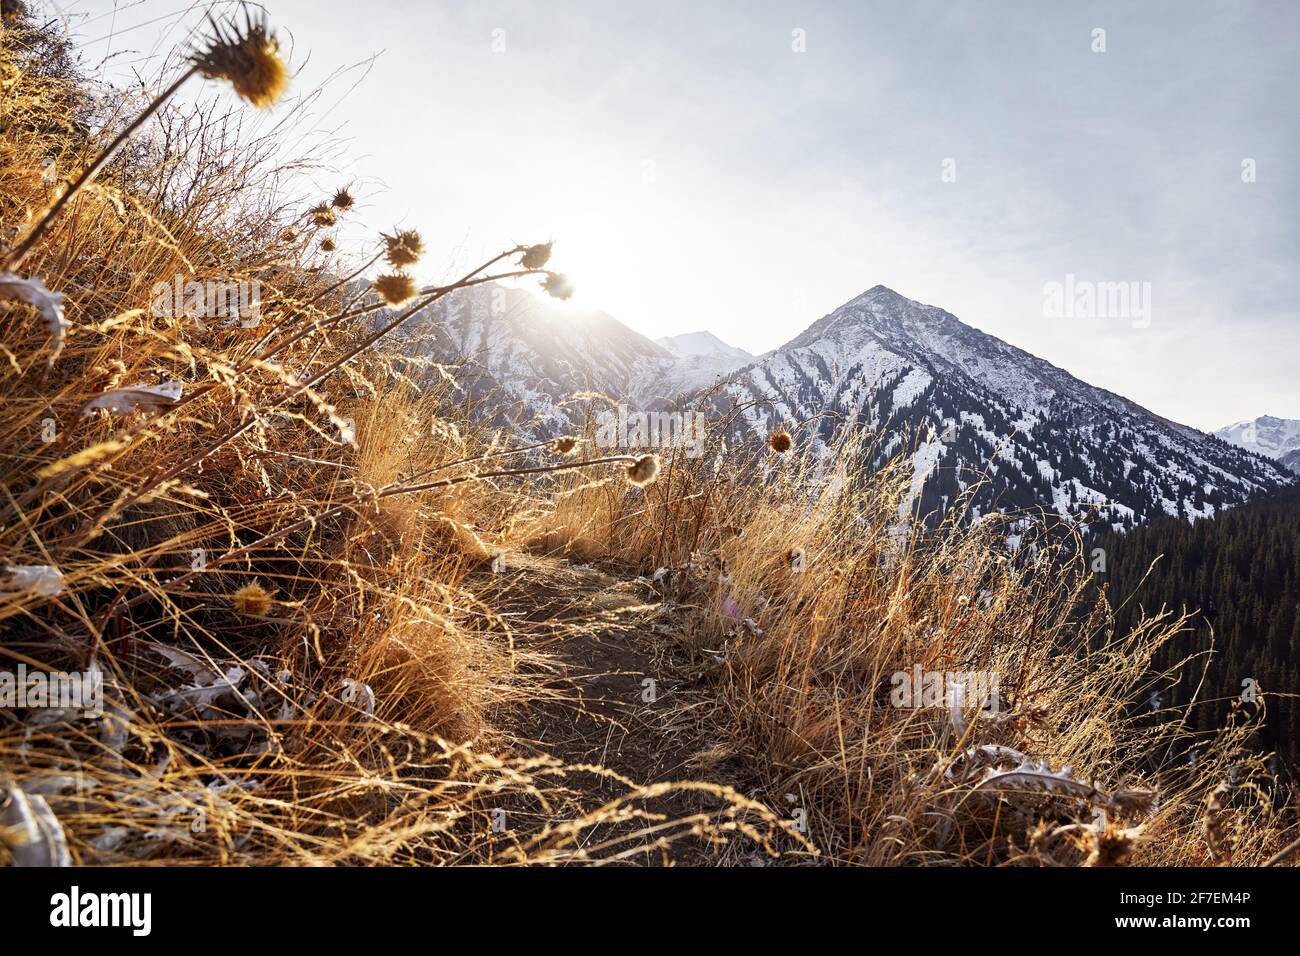 Magnifique paysage de la montagne sommet avec neige à Almaty, Kazakhstan. Concept de randonnée et de plein air Banque D'Images